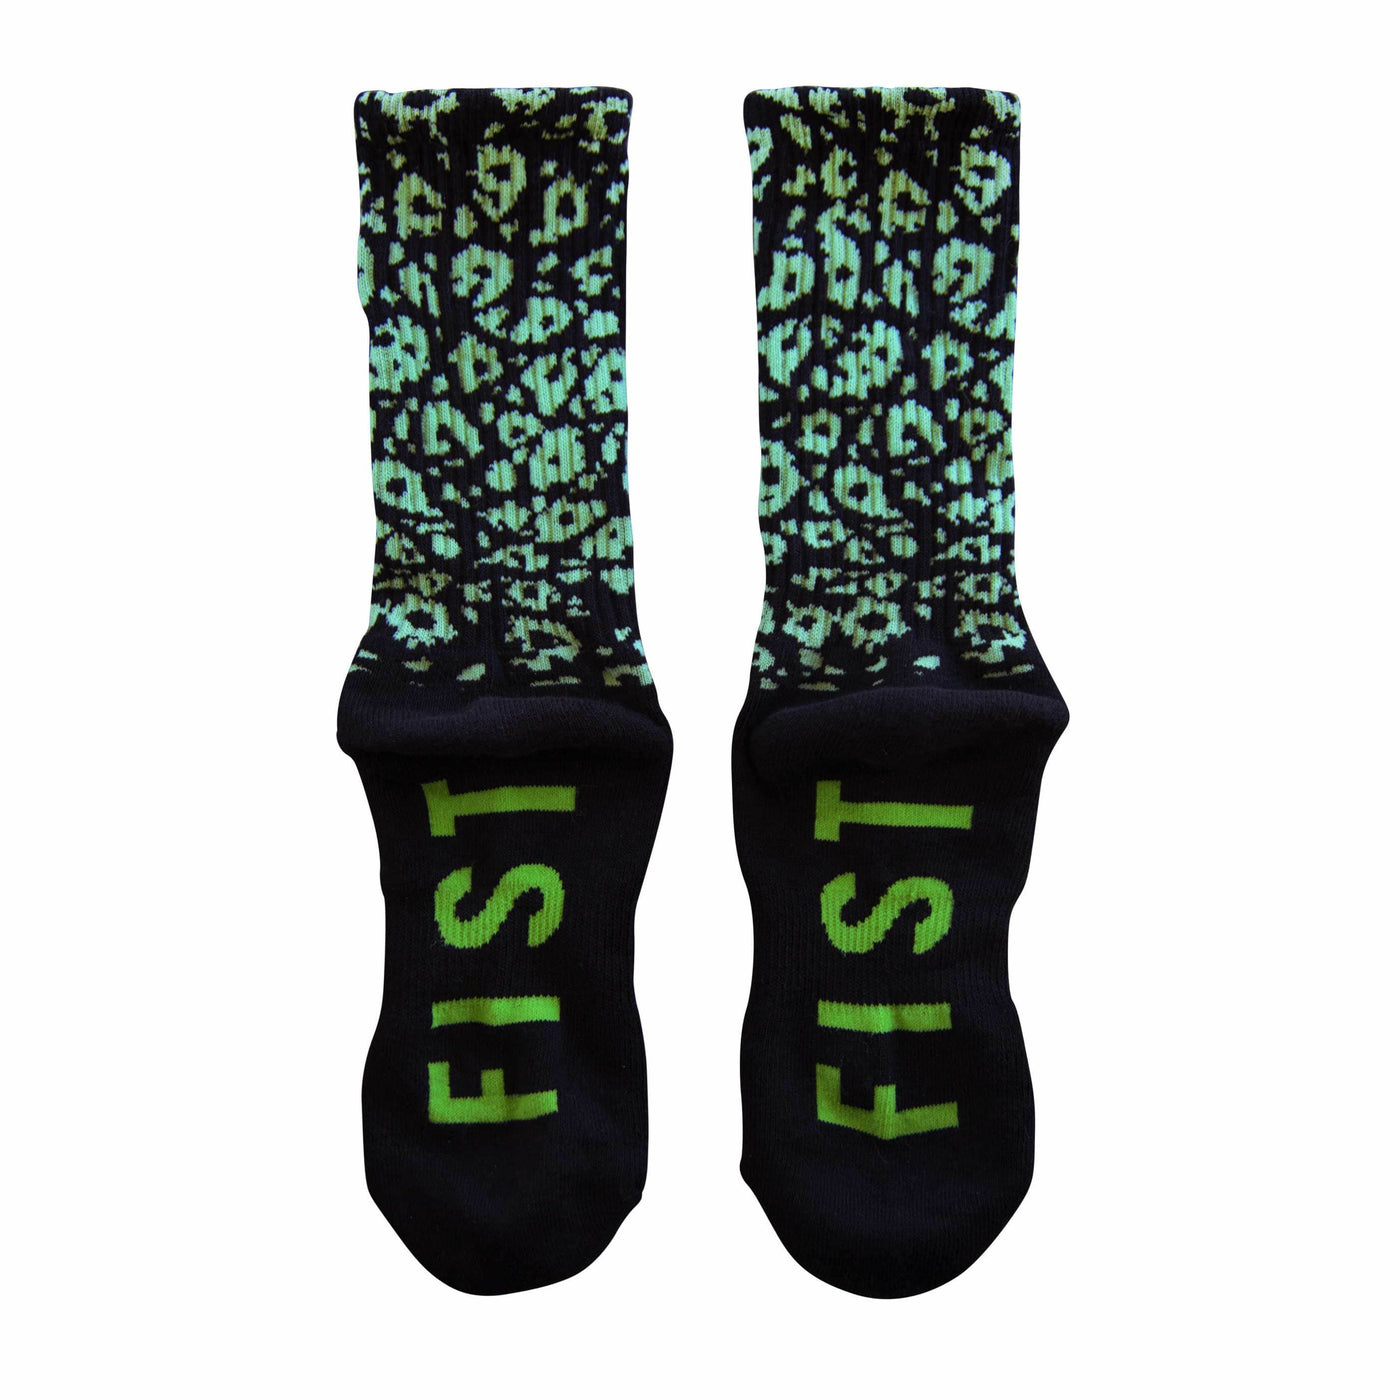 FIST Crew Socks - Croc